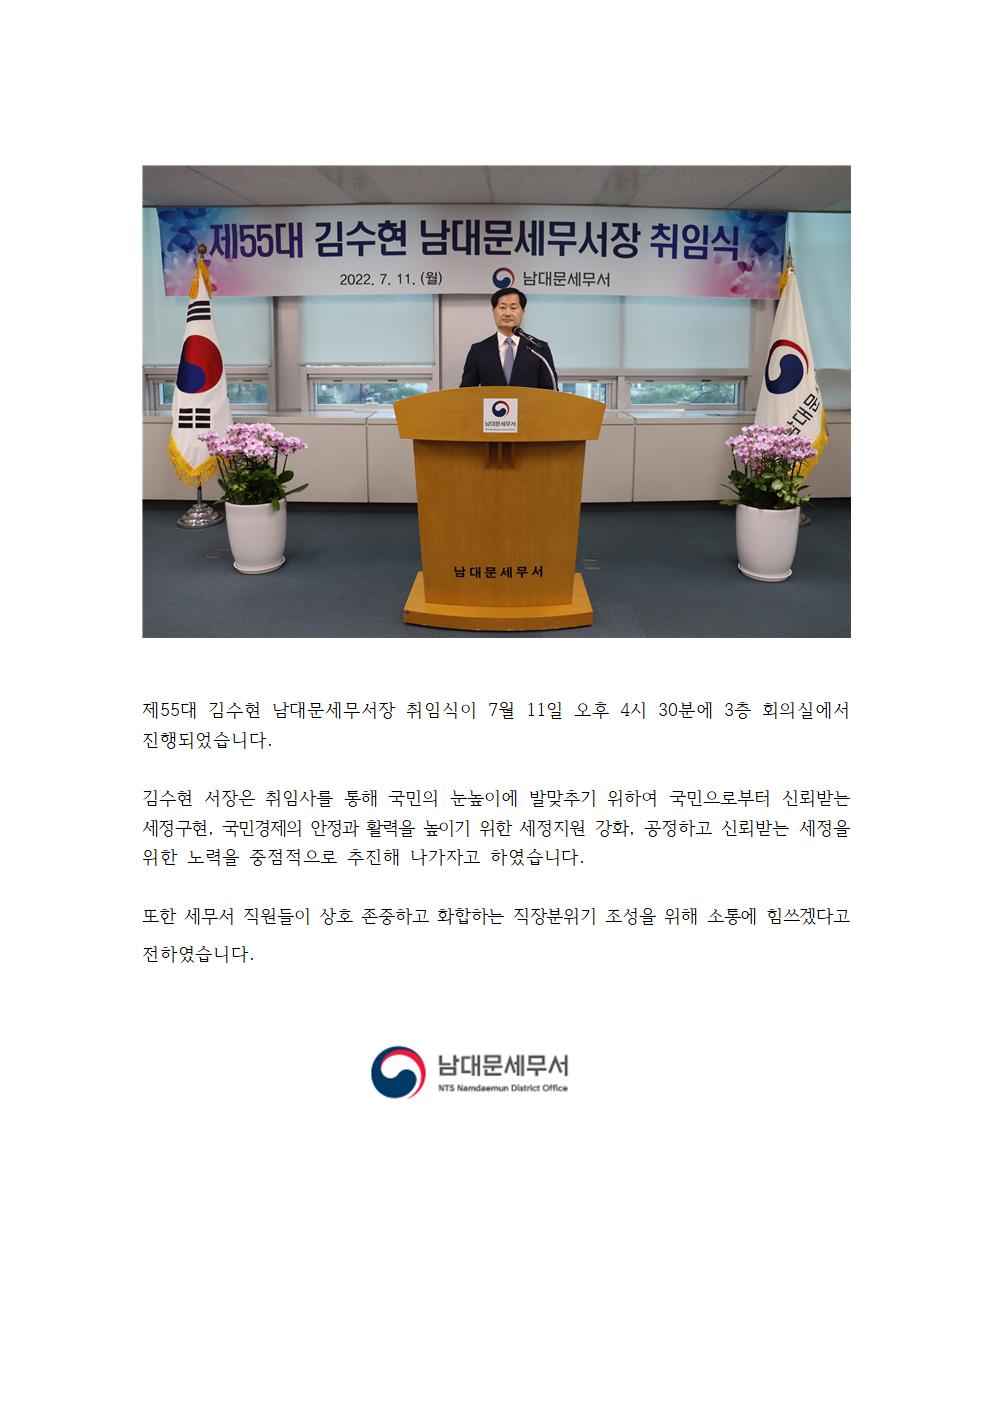 제55대 김수현 남대문세무서장 취임식